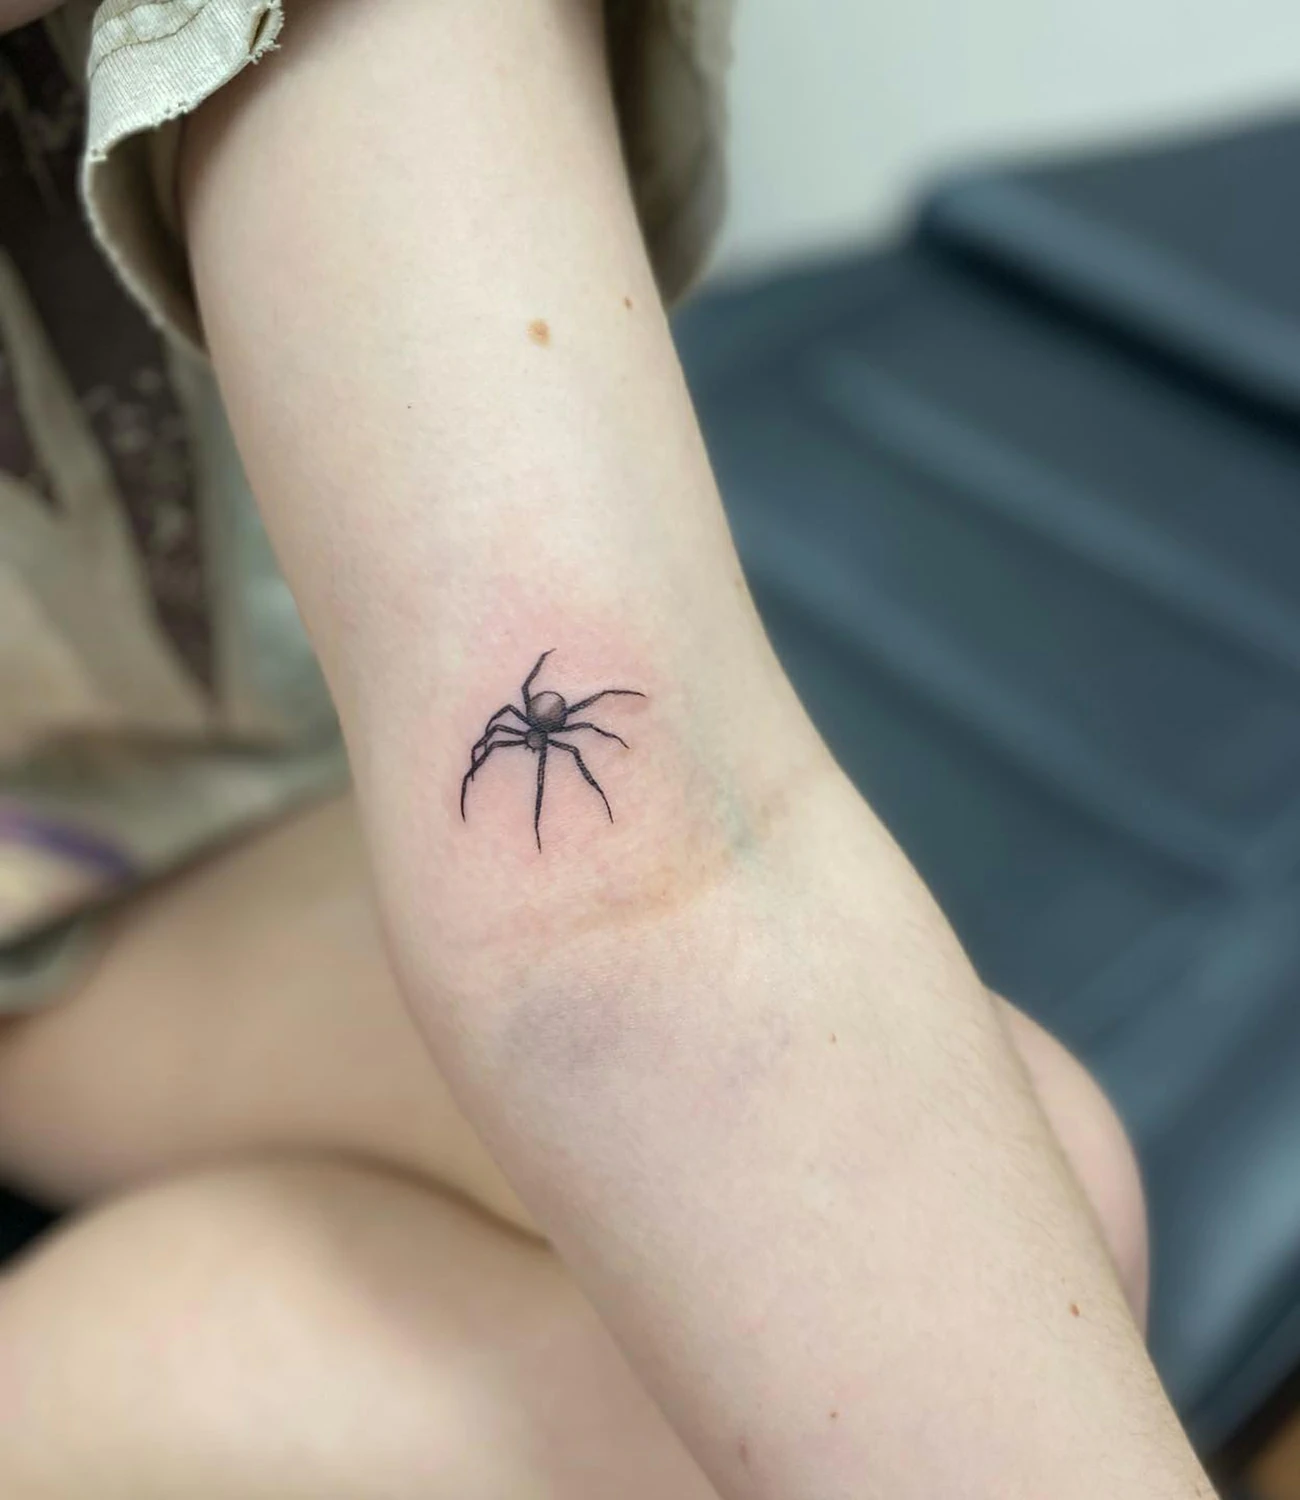 Small spider tattoo